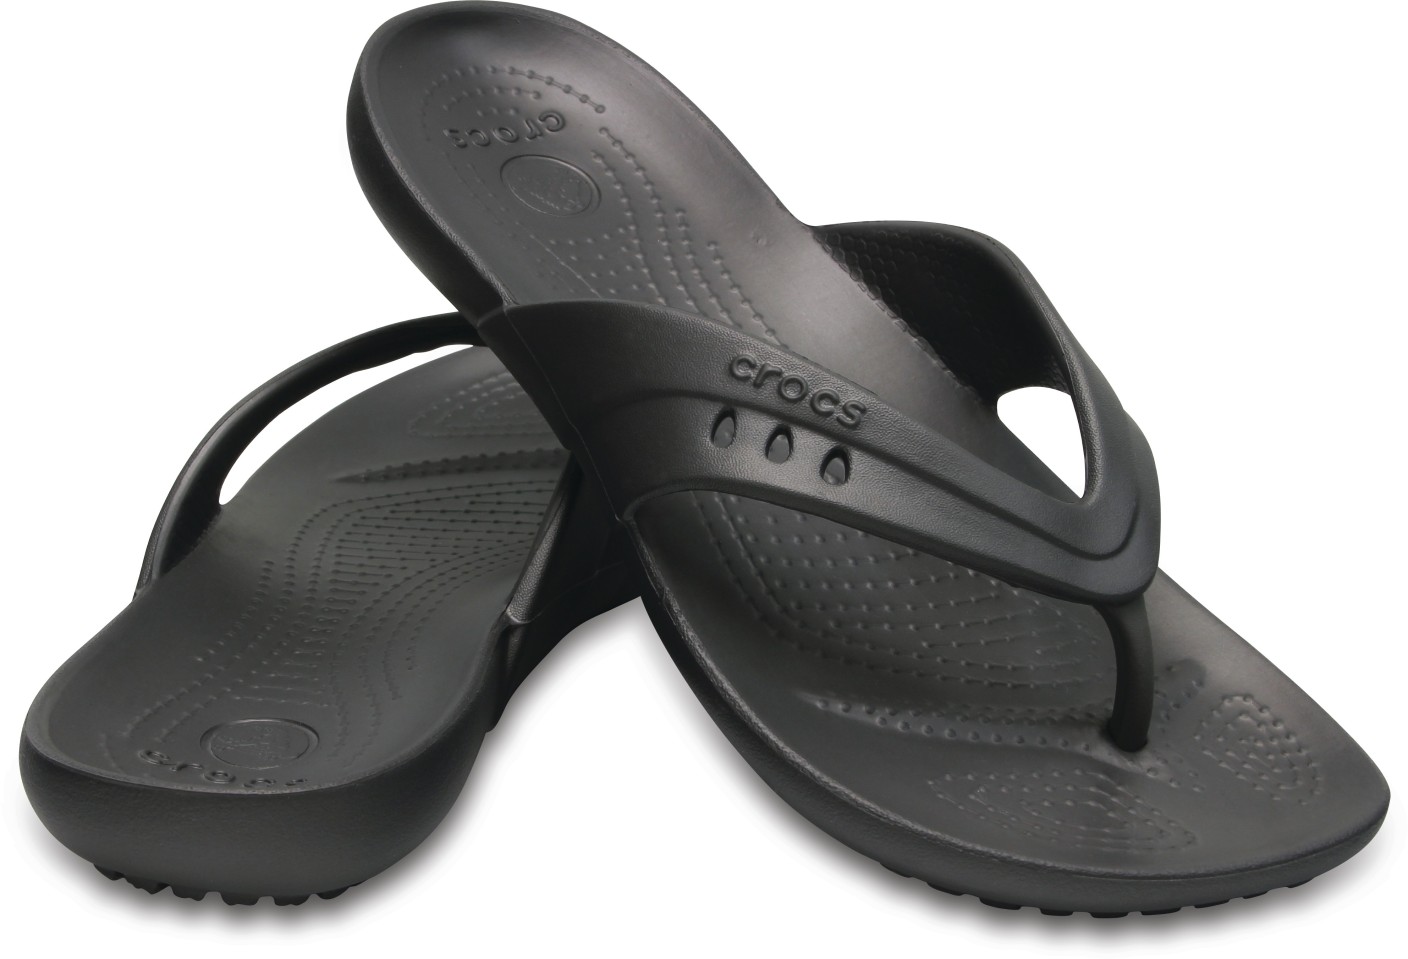 Crocs Flip Flops - Buy Crocs Flip Flops Online at Best Price - Shop ...